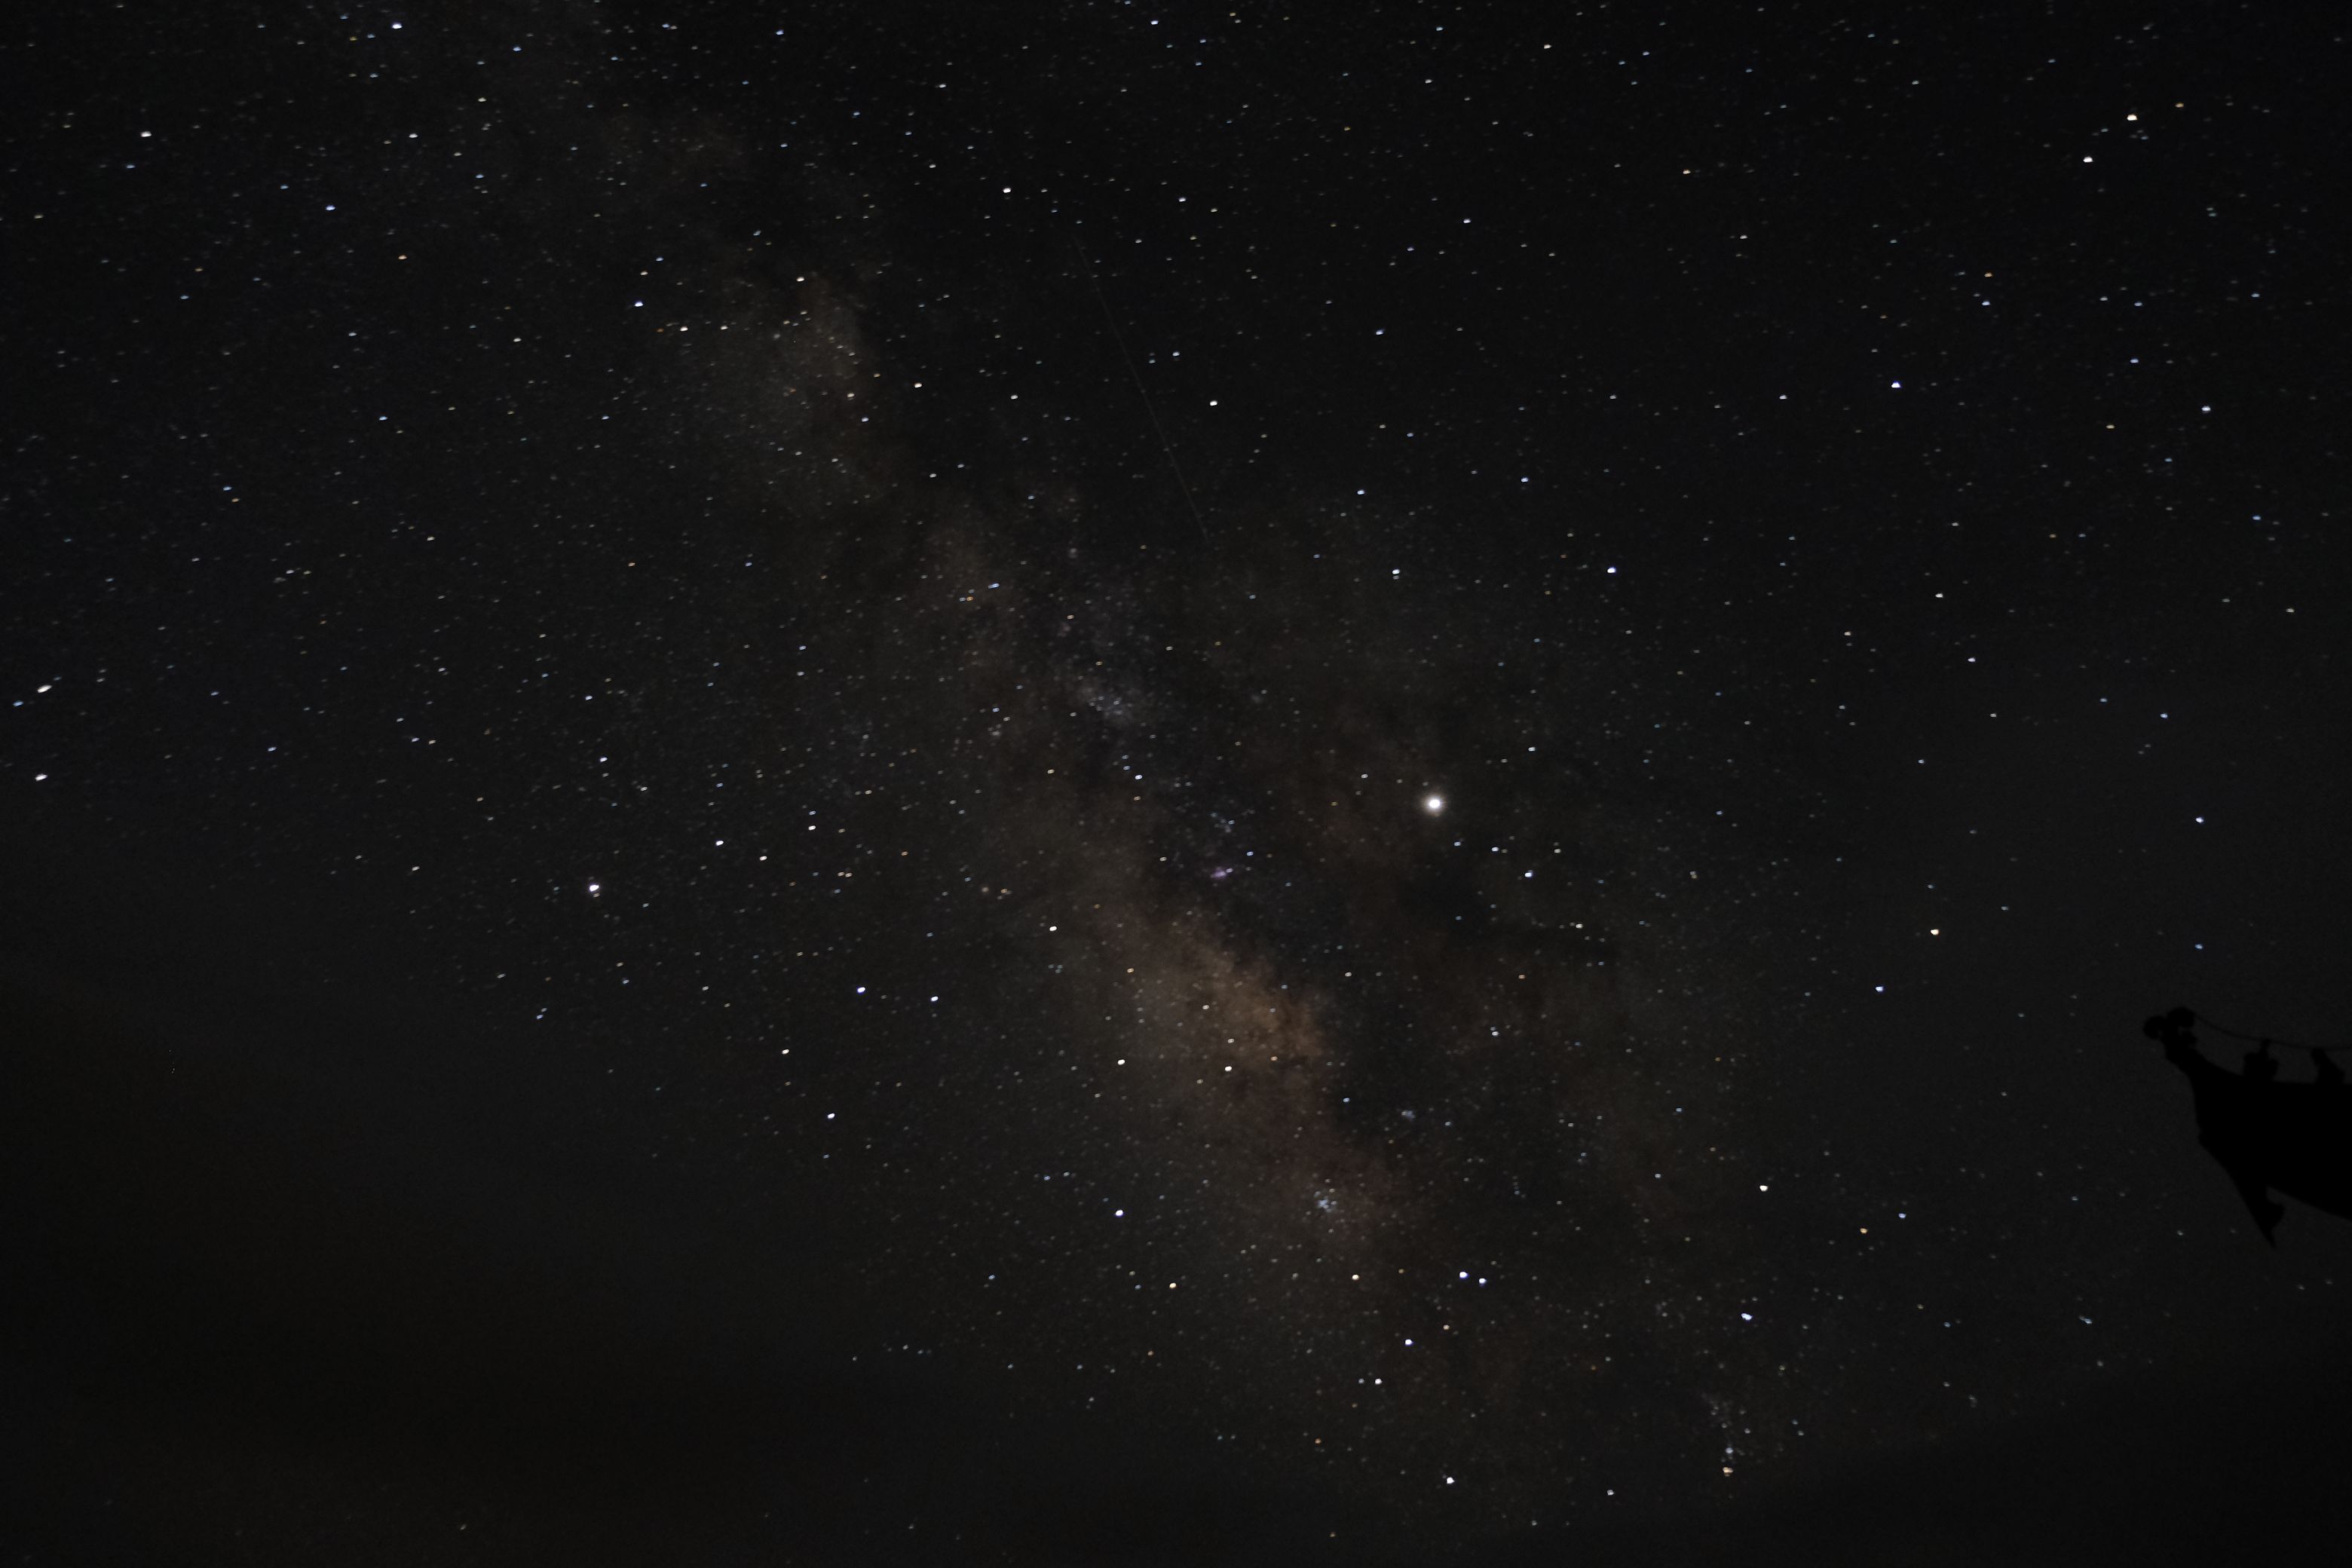 黑马河的星空图片